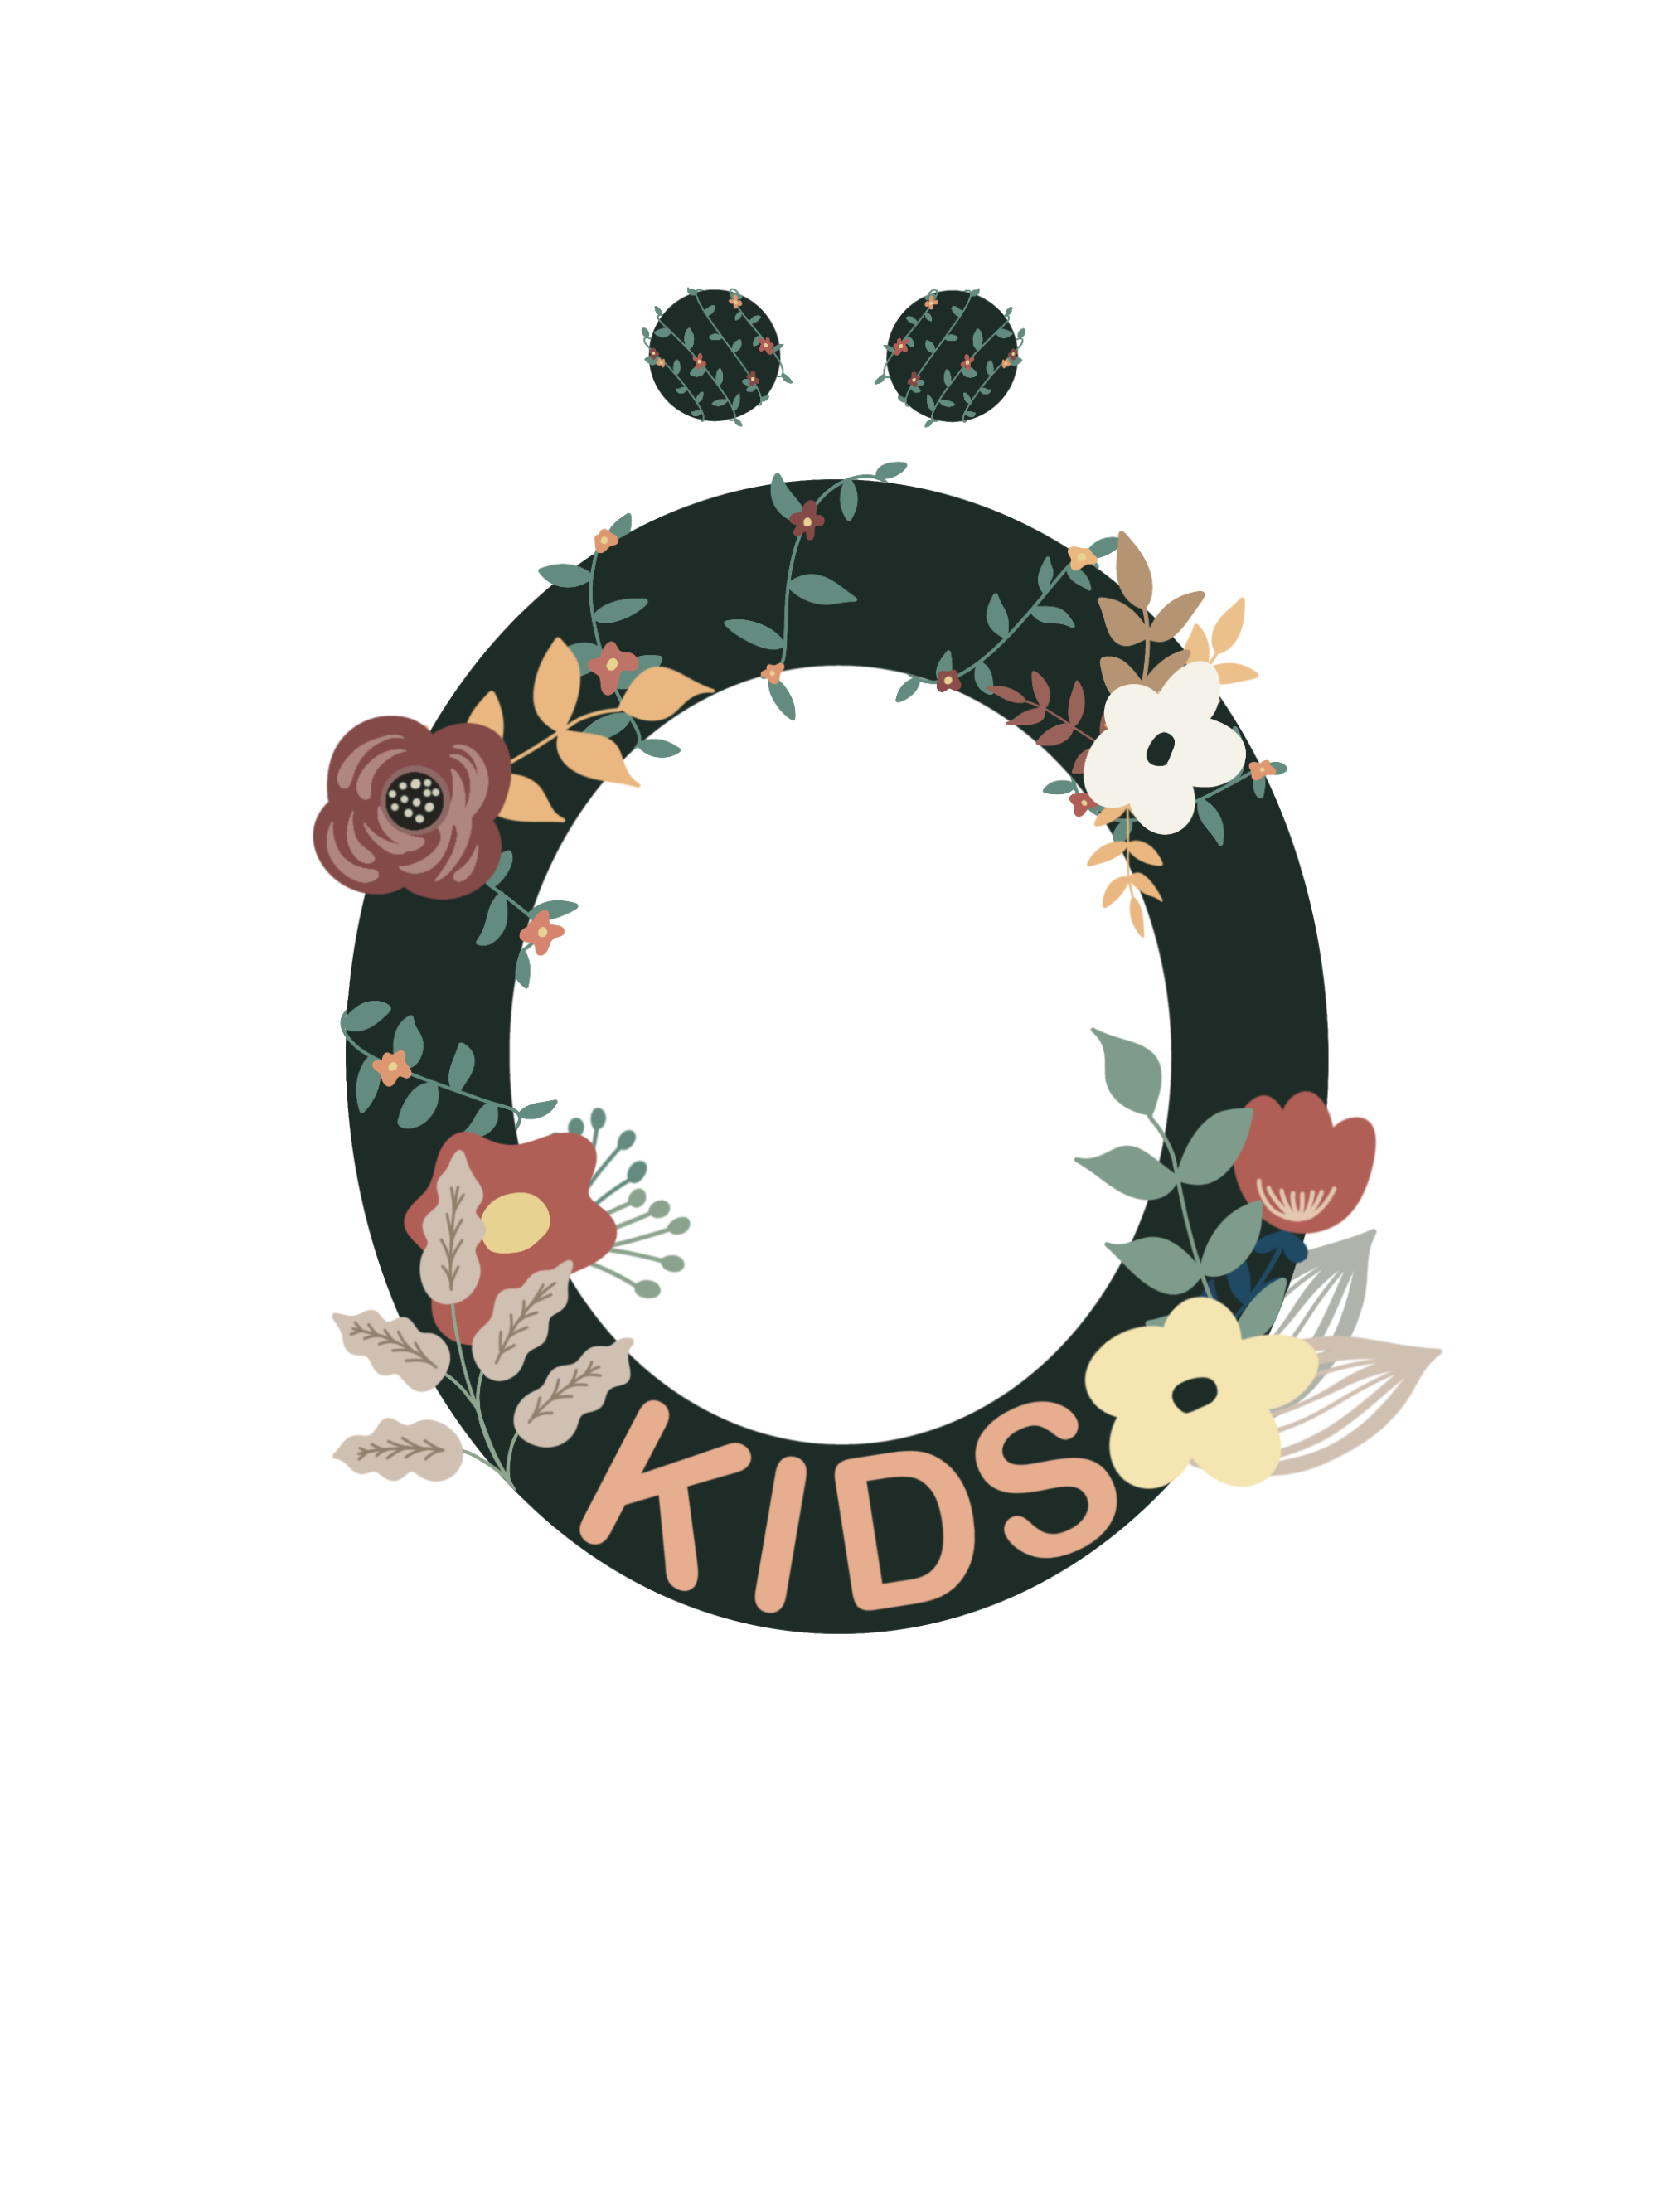 Öko-Kids